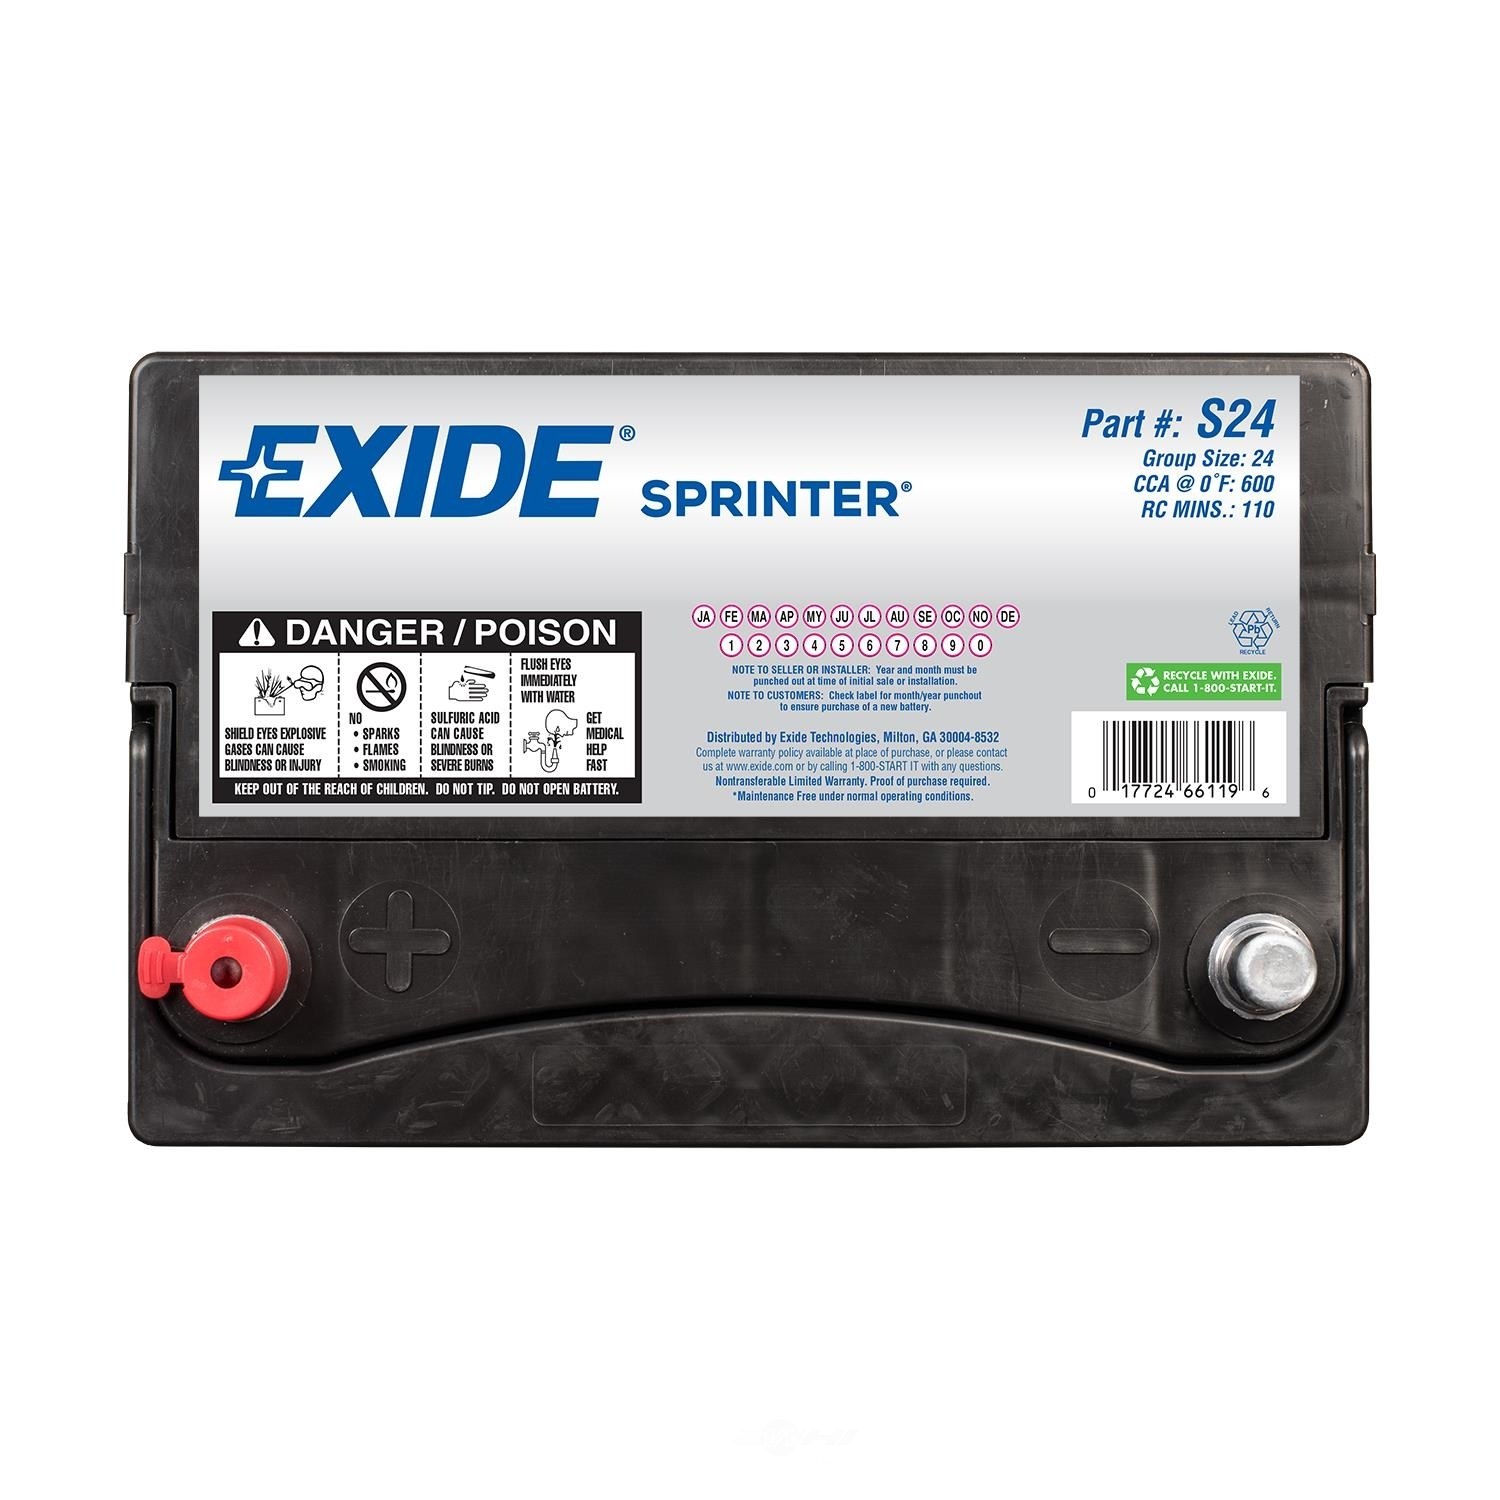 EXIDE BATTERIES - Sprinter - CCA: 600 - EX1 S24